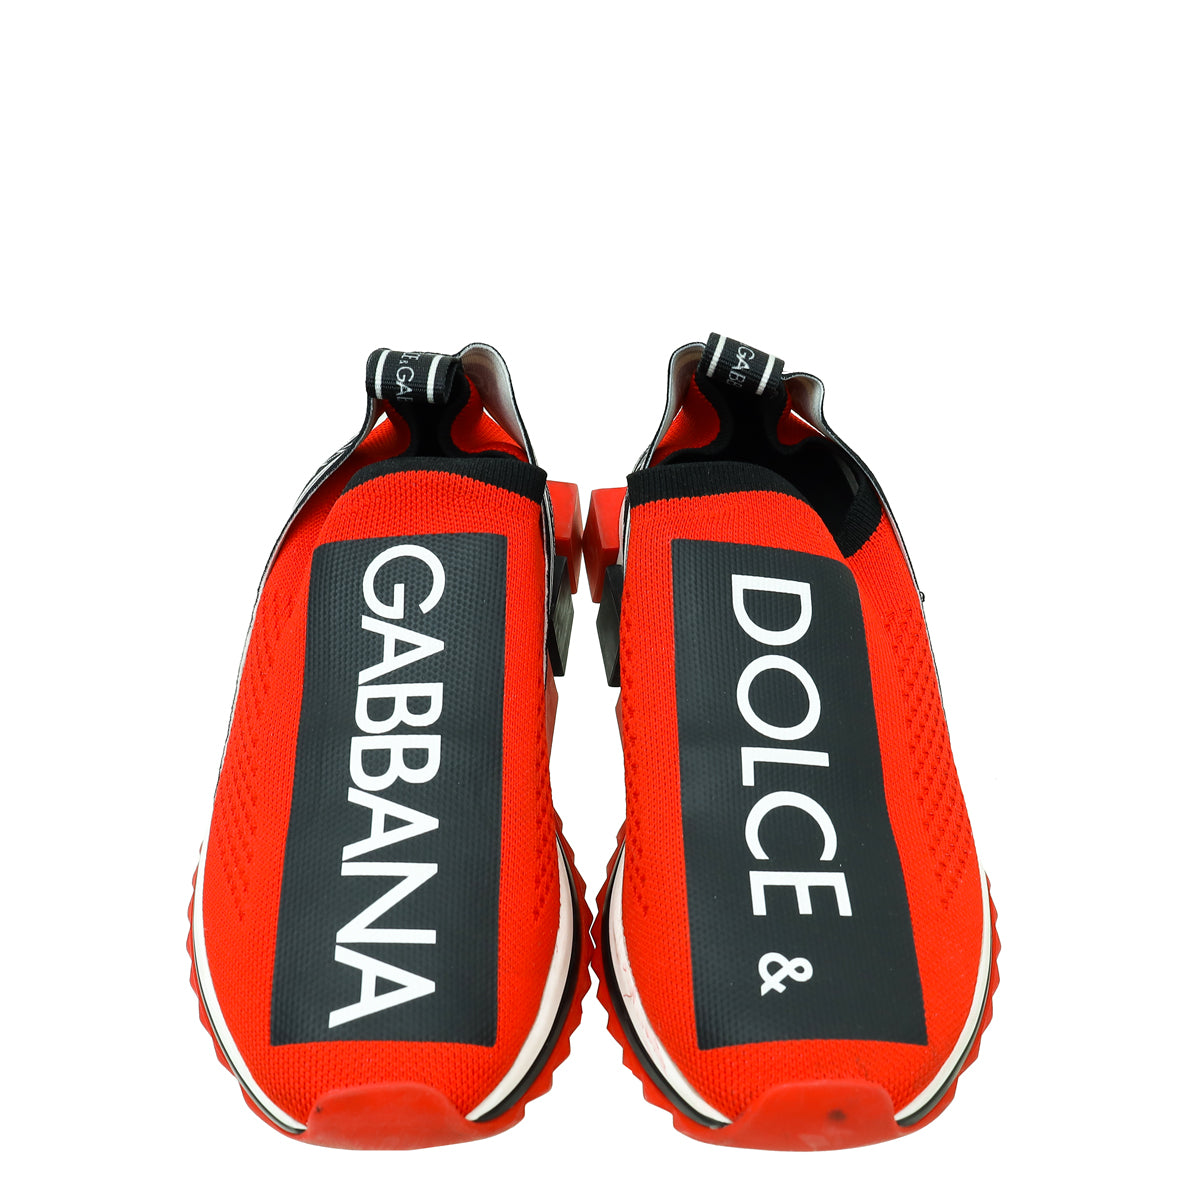 Dolce & Gabbana Bicolor PortobelLo Slip On Mesh Sneaker 37